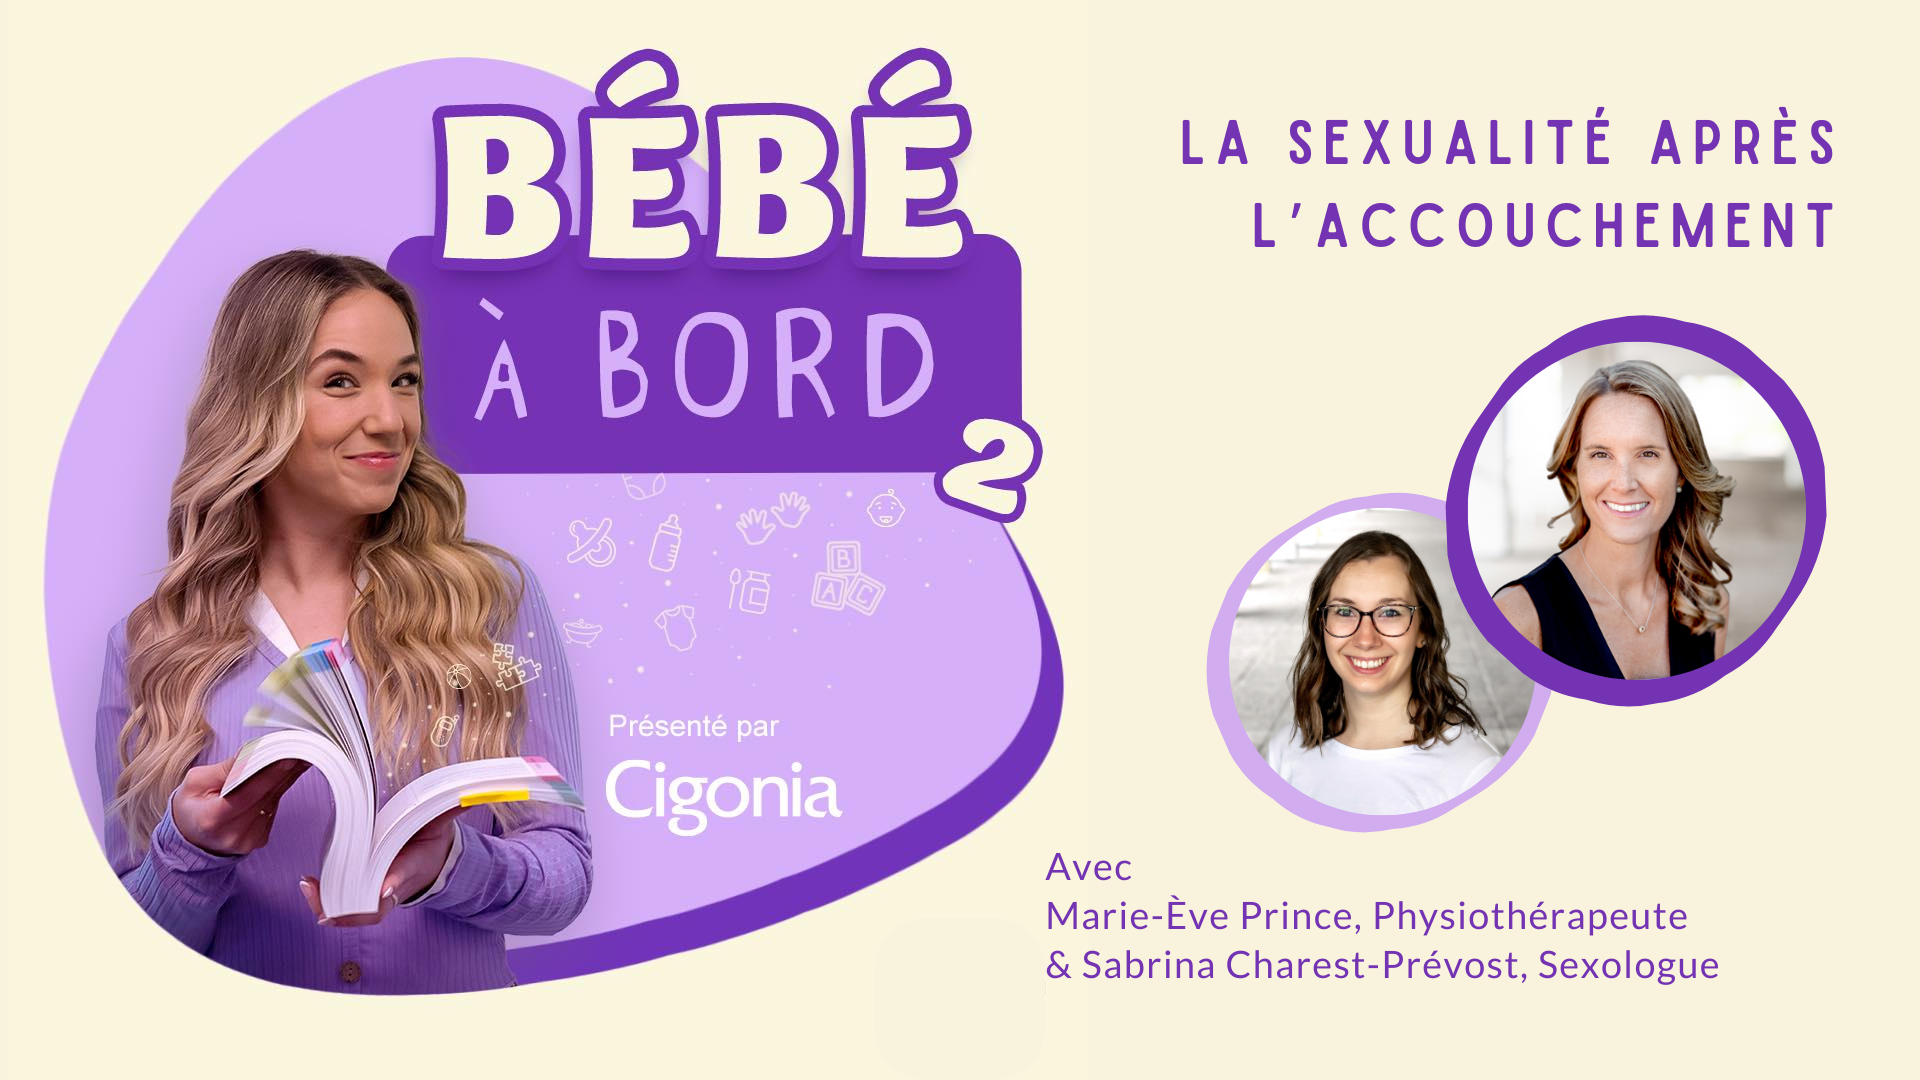 Cigonia | Centre d'expertise en rééducation périnéale et pédiatrique | Sherbrooke | Balado Bébé à Bord : La sexualité après l'accouchement